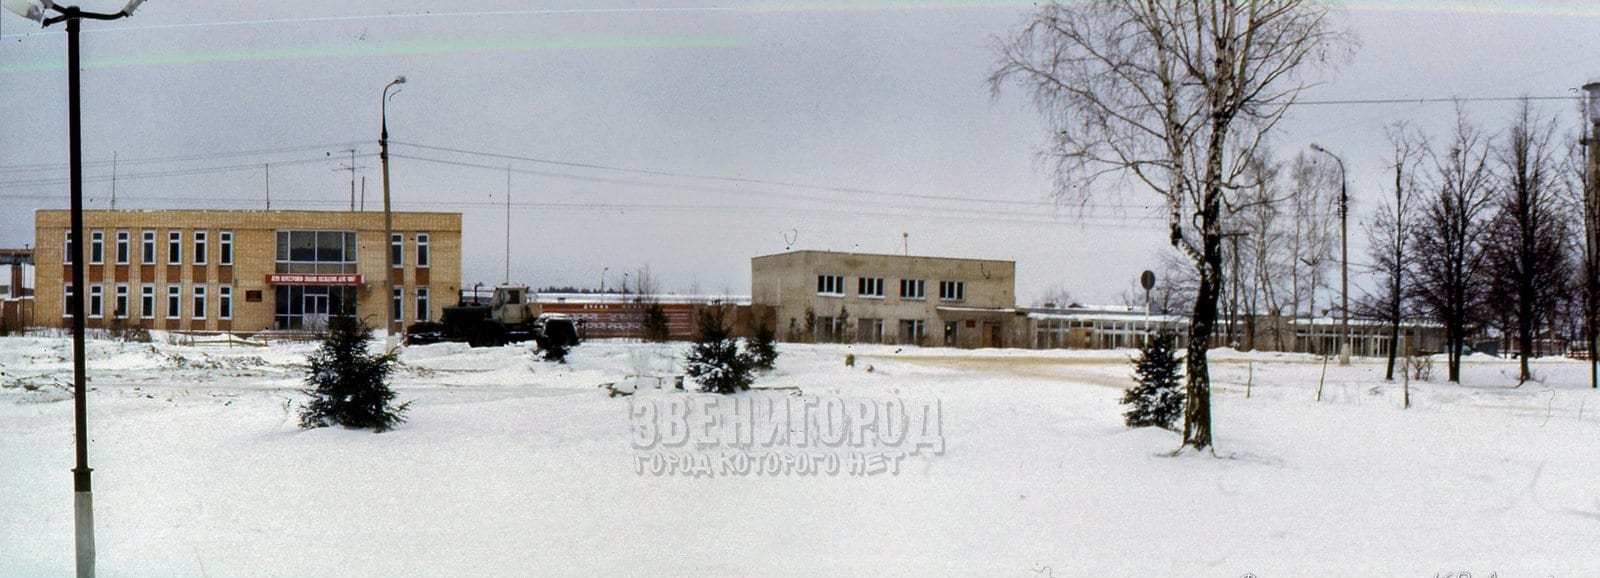 Панорама центральной площади села Ершово из двух фото 1989 года, искусственно "склеенная"  по технологиям 21 века.